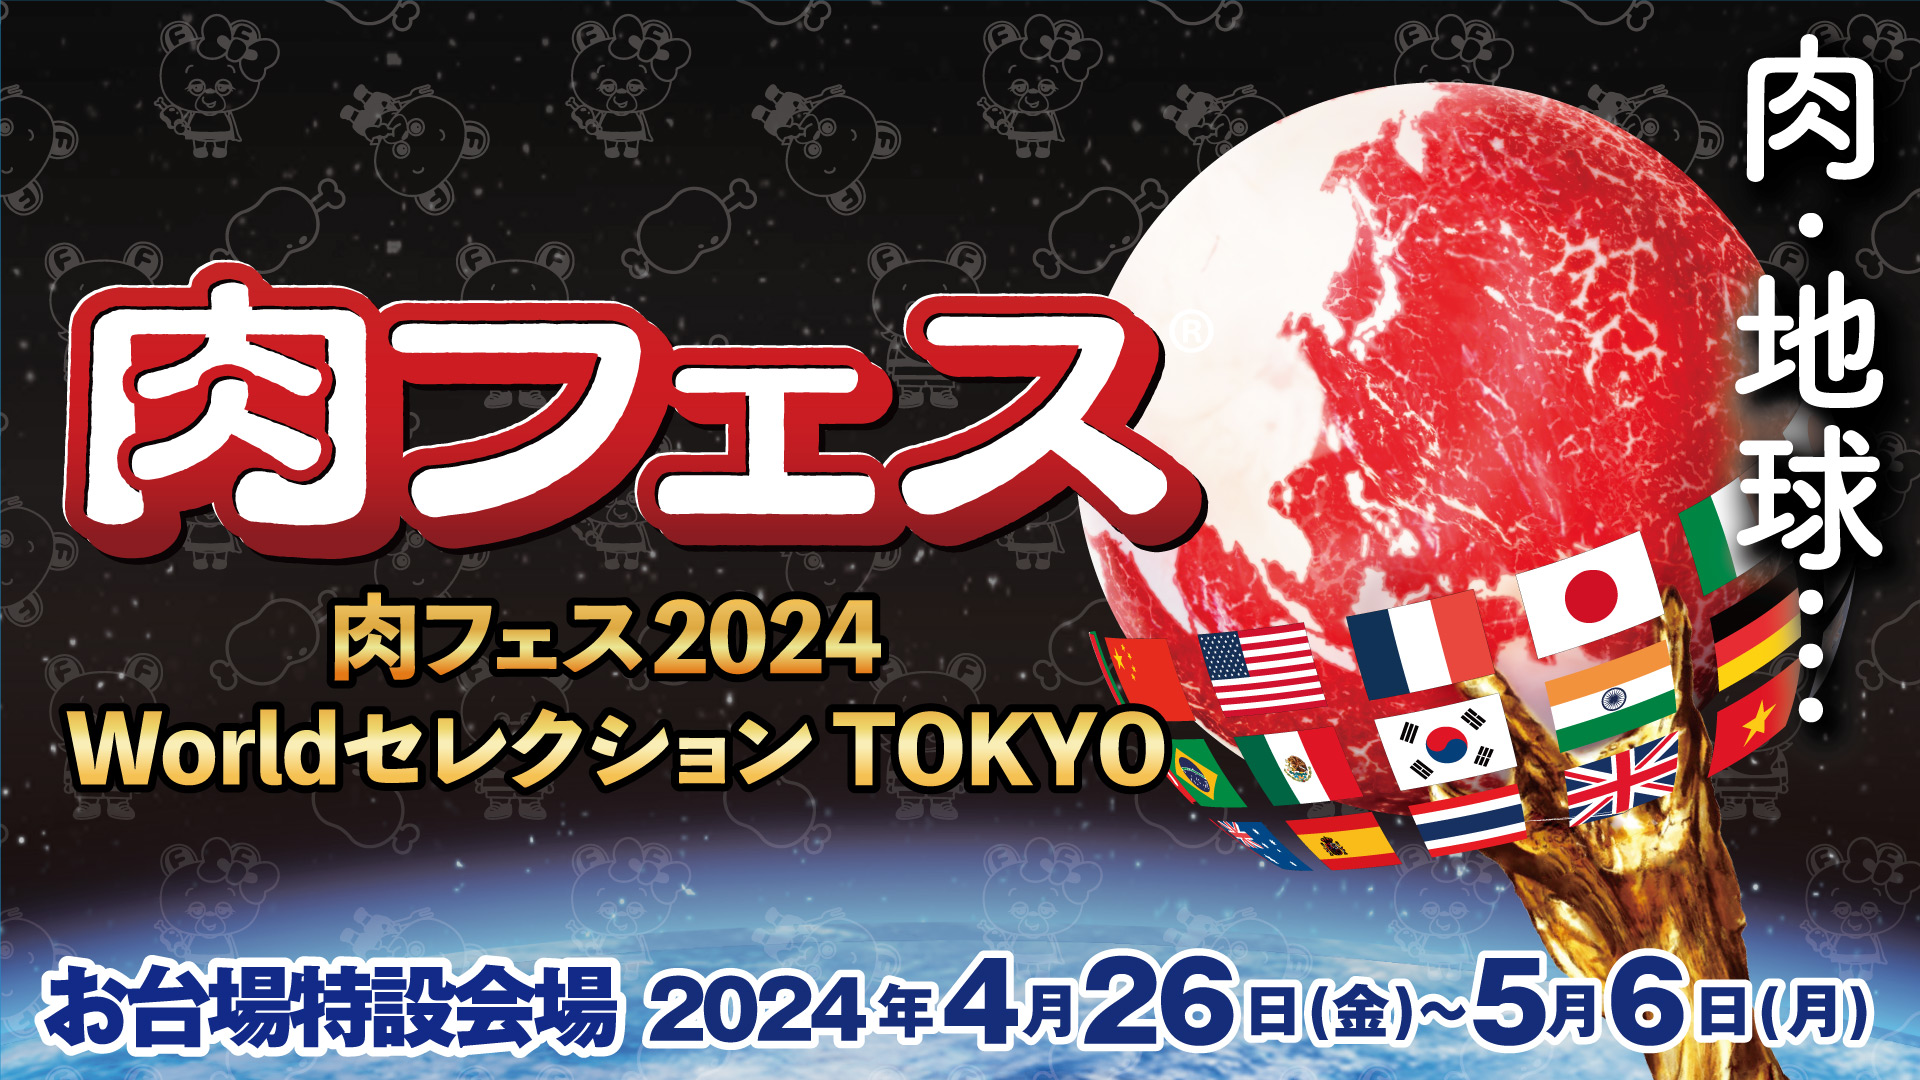 肉フェス 2024 Worldセレクション TOKYO